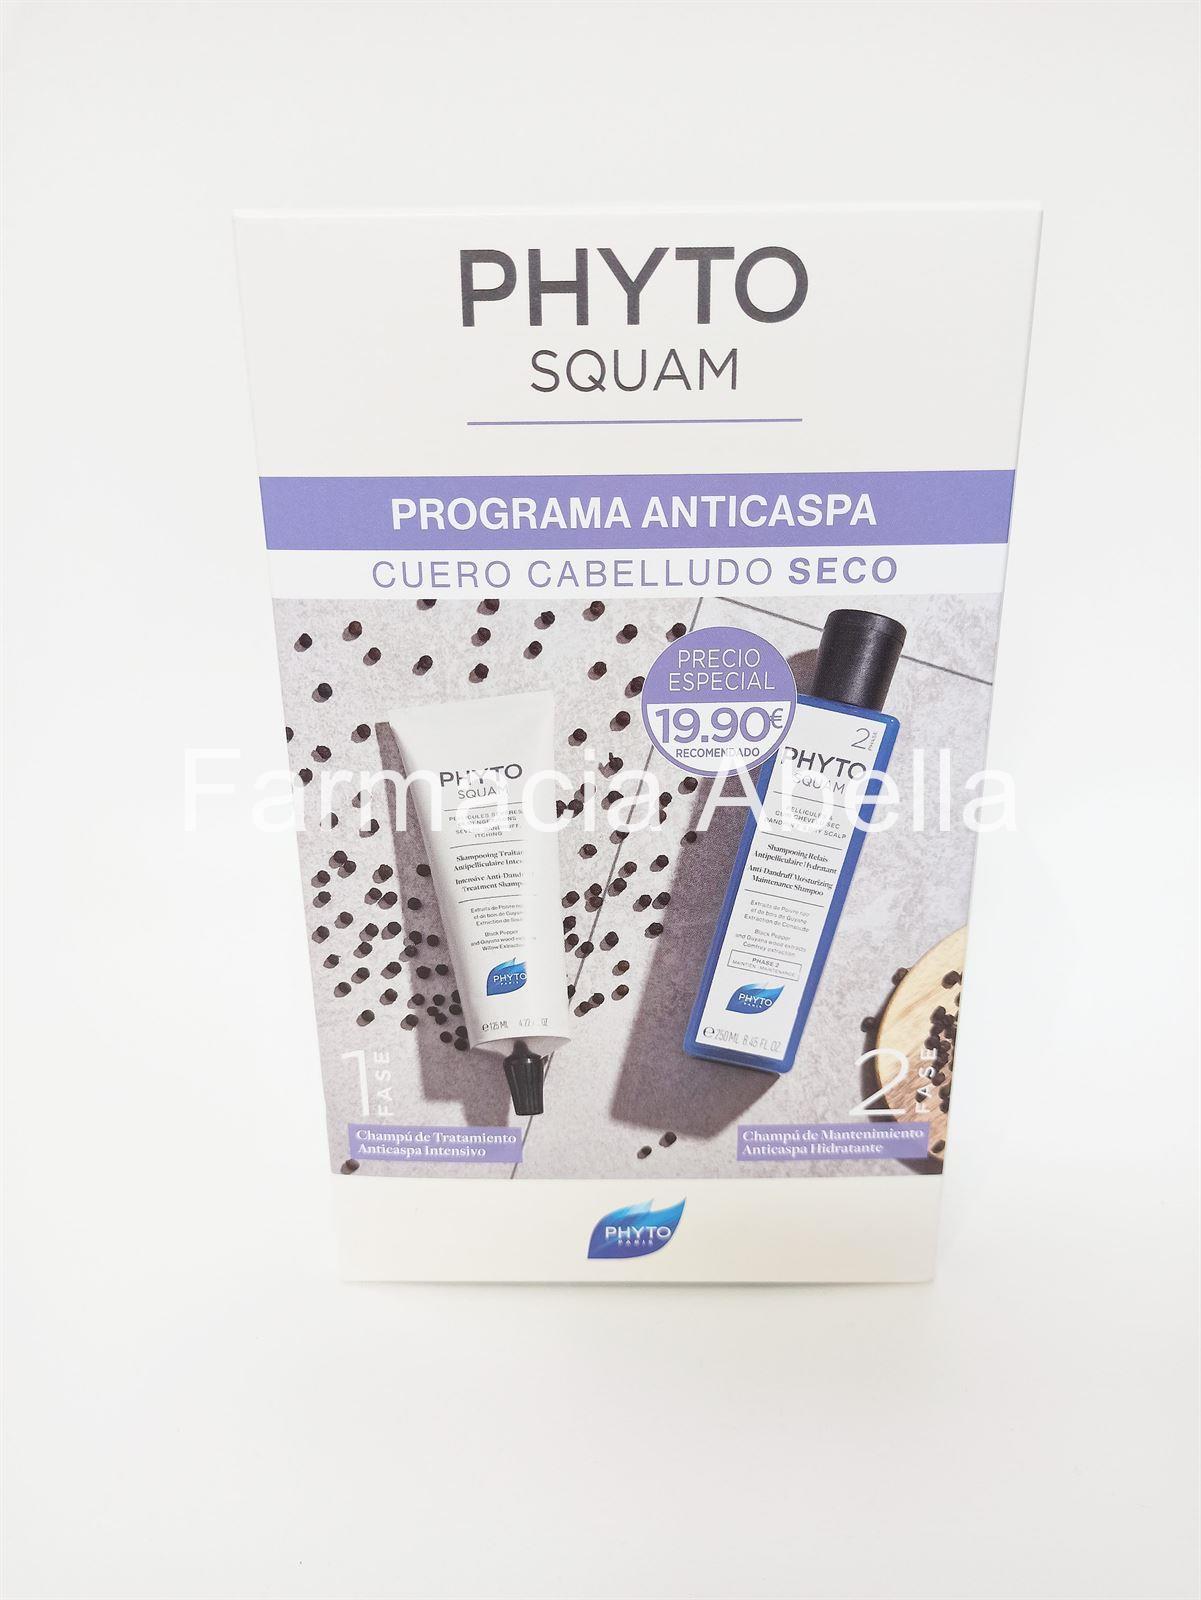 Phytosquam programa anticaspa para cabello seco ( pack champú de tratamiento + champú de mantenimiento) - Imagen 1